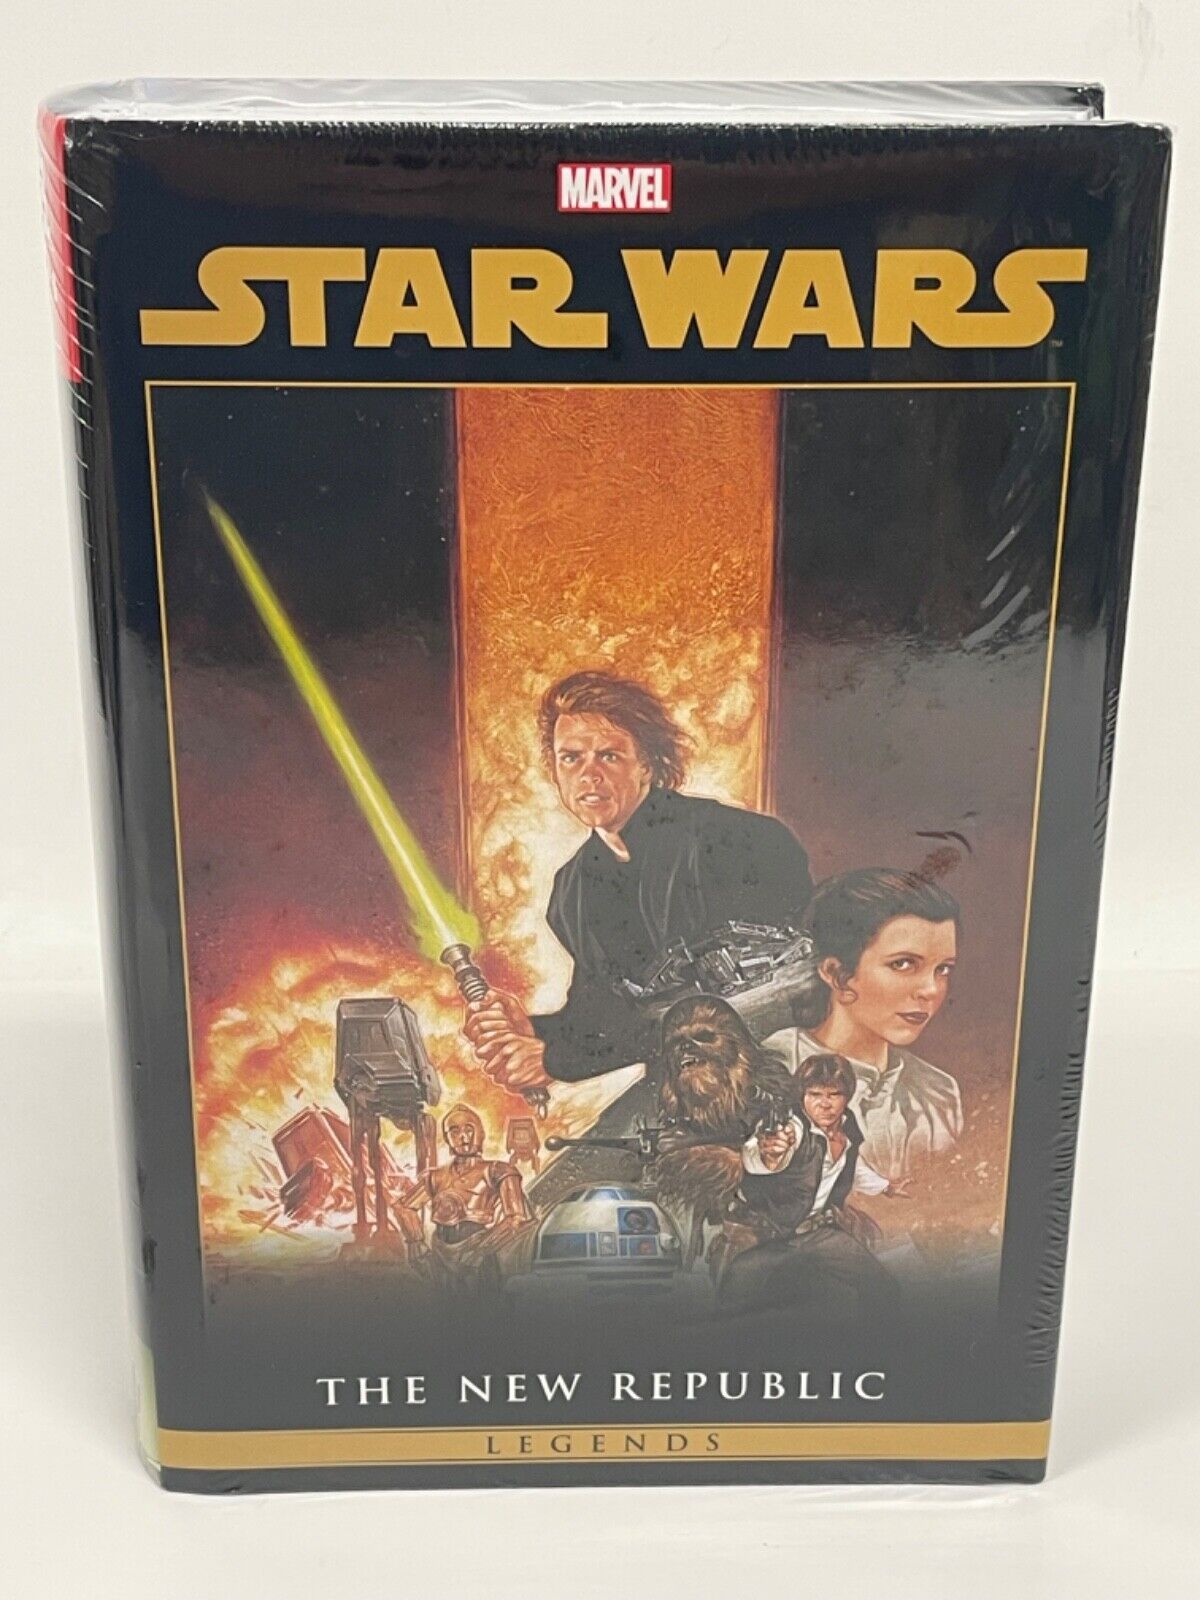 Star Wars Legends New Republic Omnibus Vol 2 REGULAR COVER Marvel Comics HC